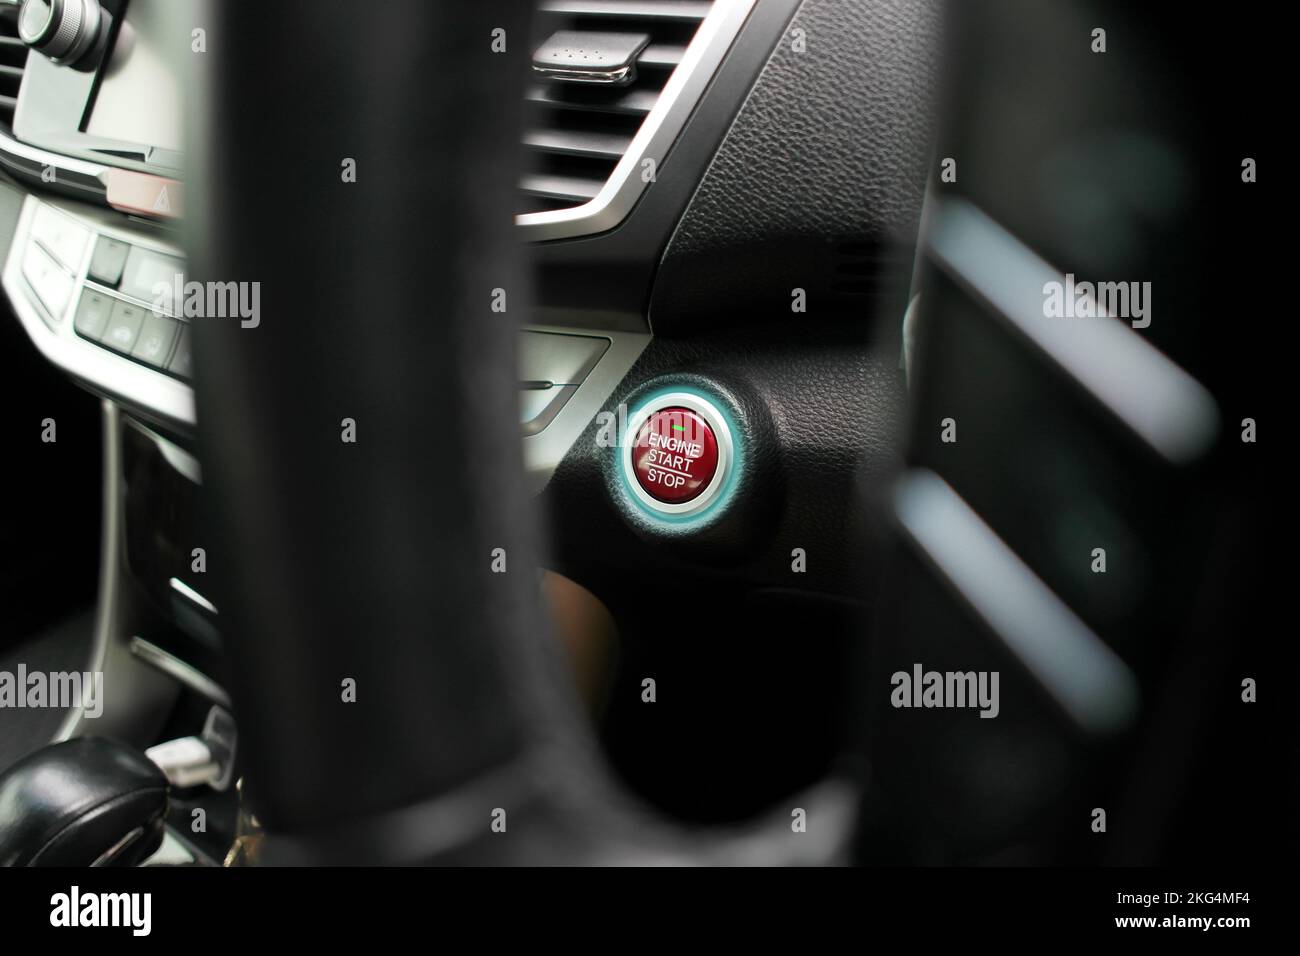 Roter Motor-Start-Stopp-Knopf mit blauer LED auf dem Bedienfeld eines Fahrzeugs Stockfoto